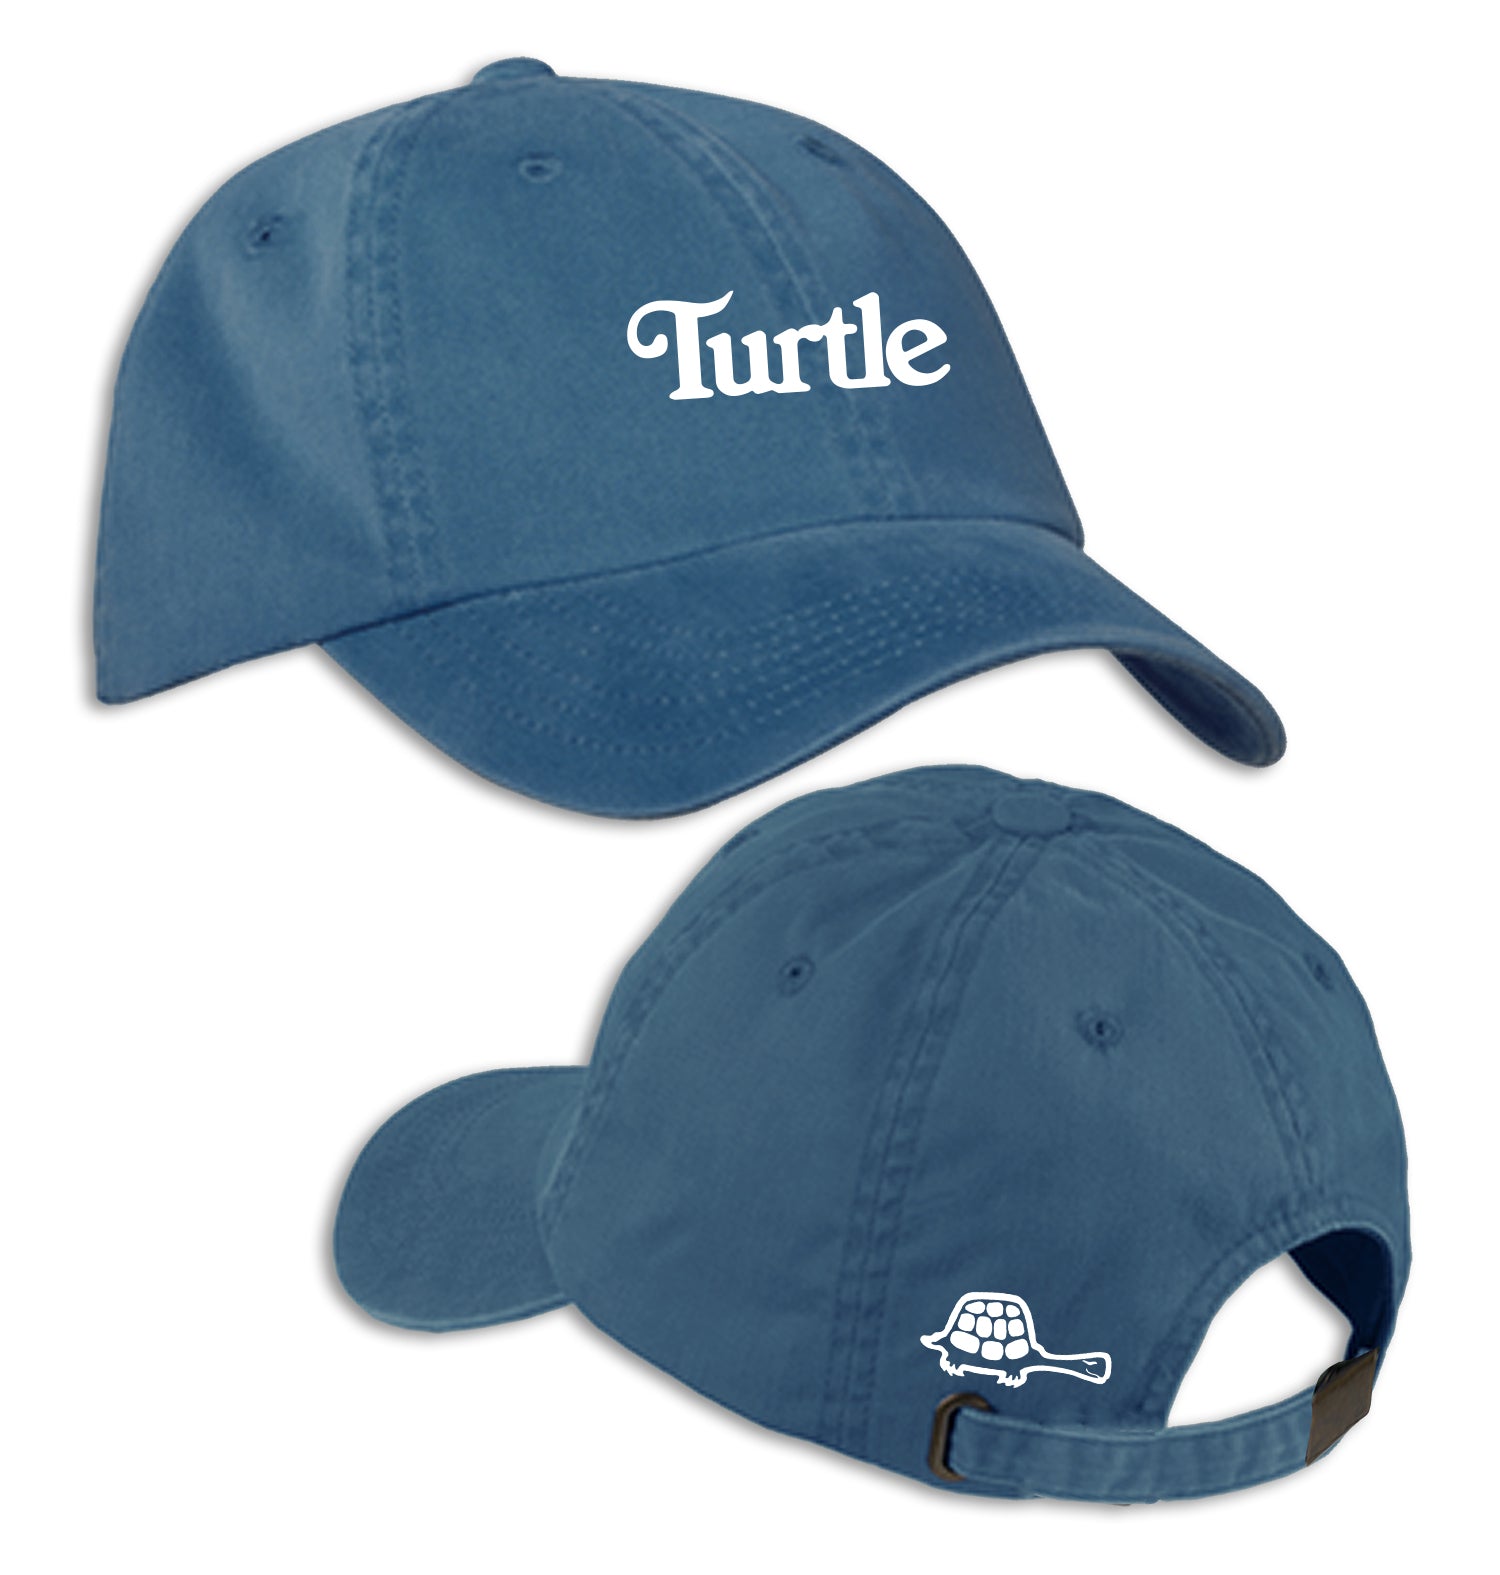 Turtle Caps